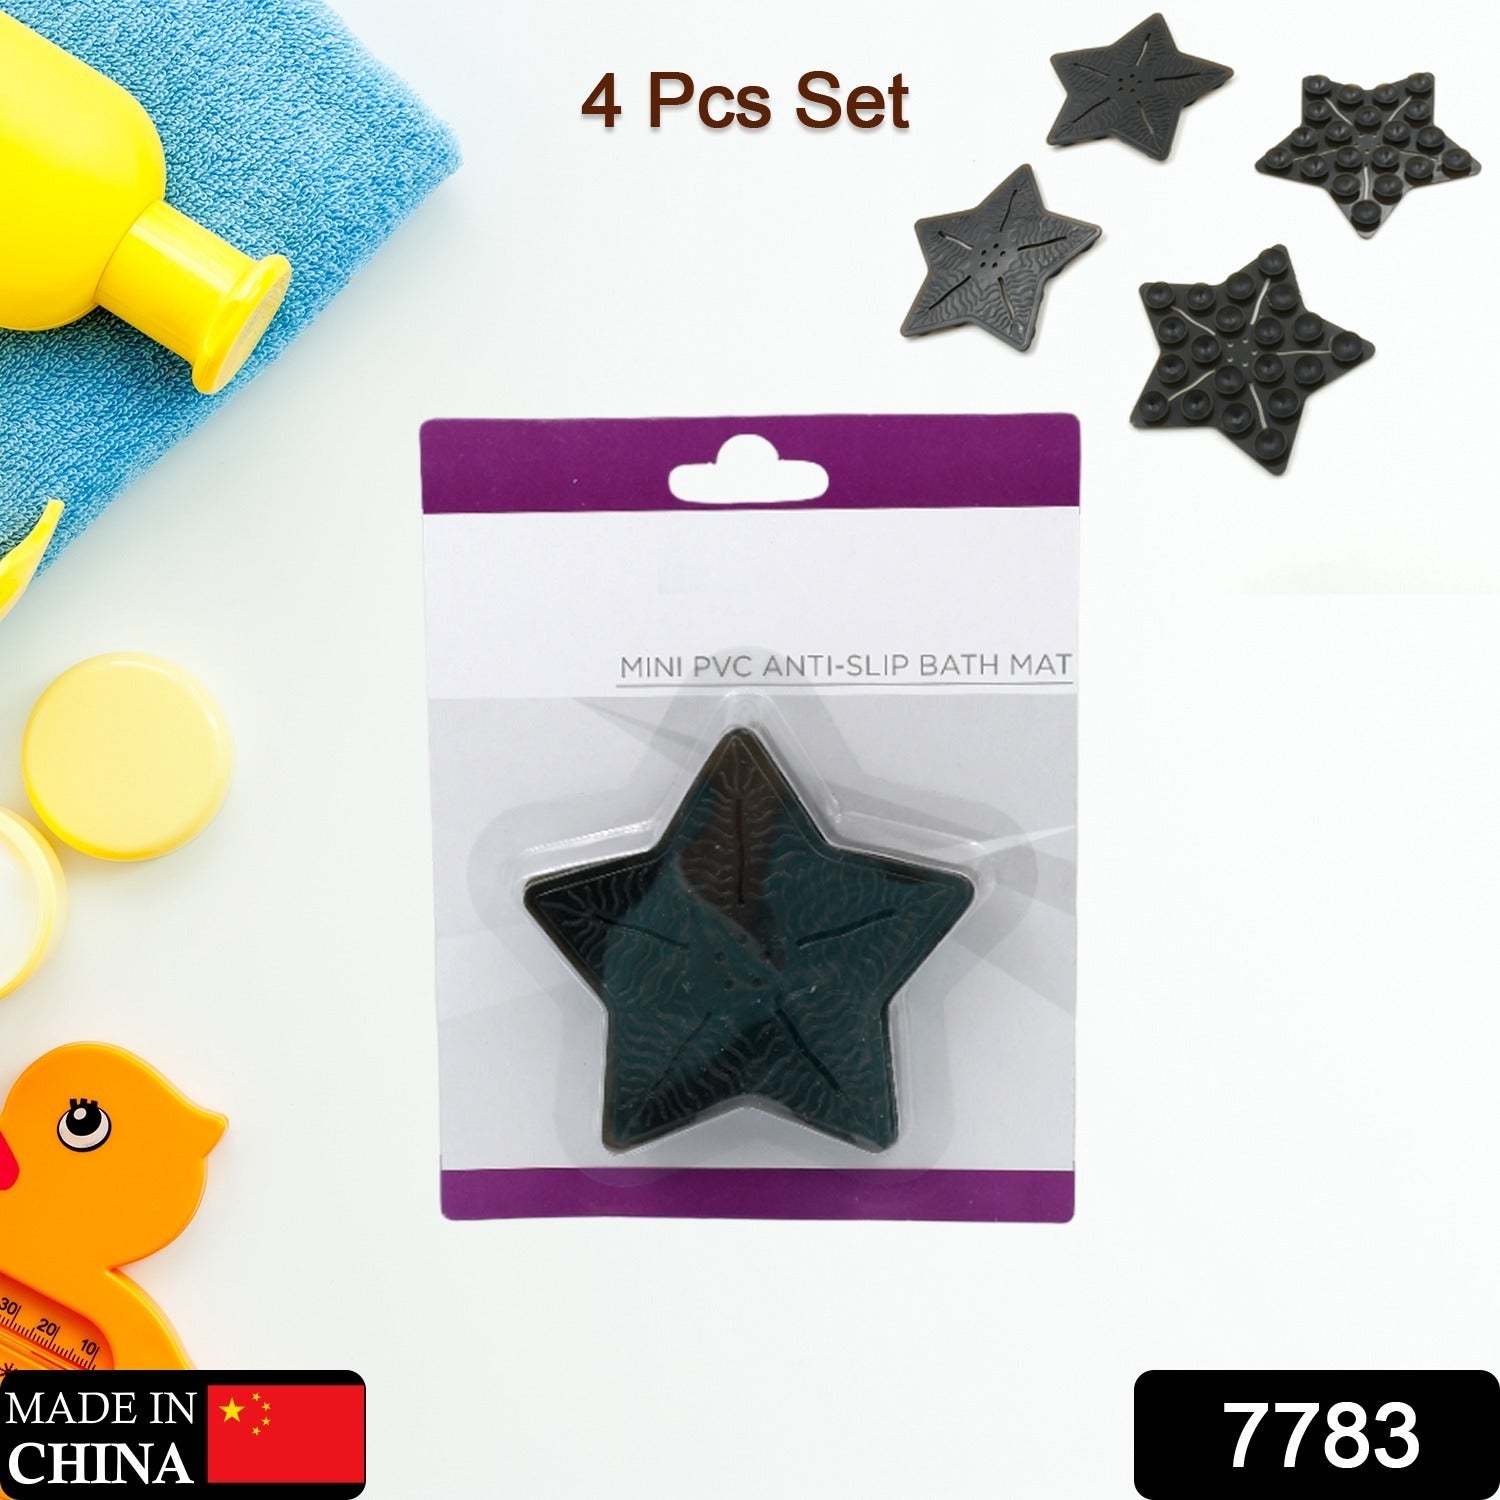 Mini  Pvc Anti-Slip Bat Mat Non Slip Baby Bath Mats, Mini Child Safety Anti Slip Shower Mats Star,& Leaf Shaped for Kids (4 pc Set)